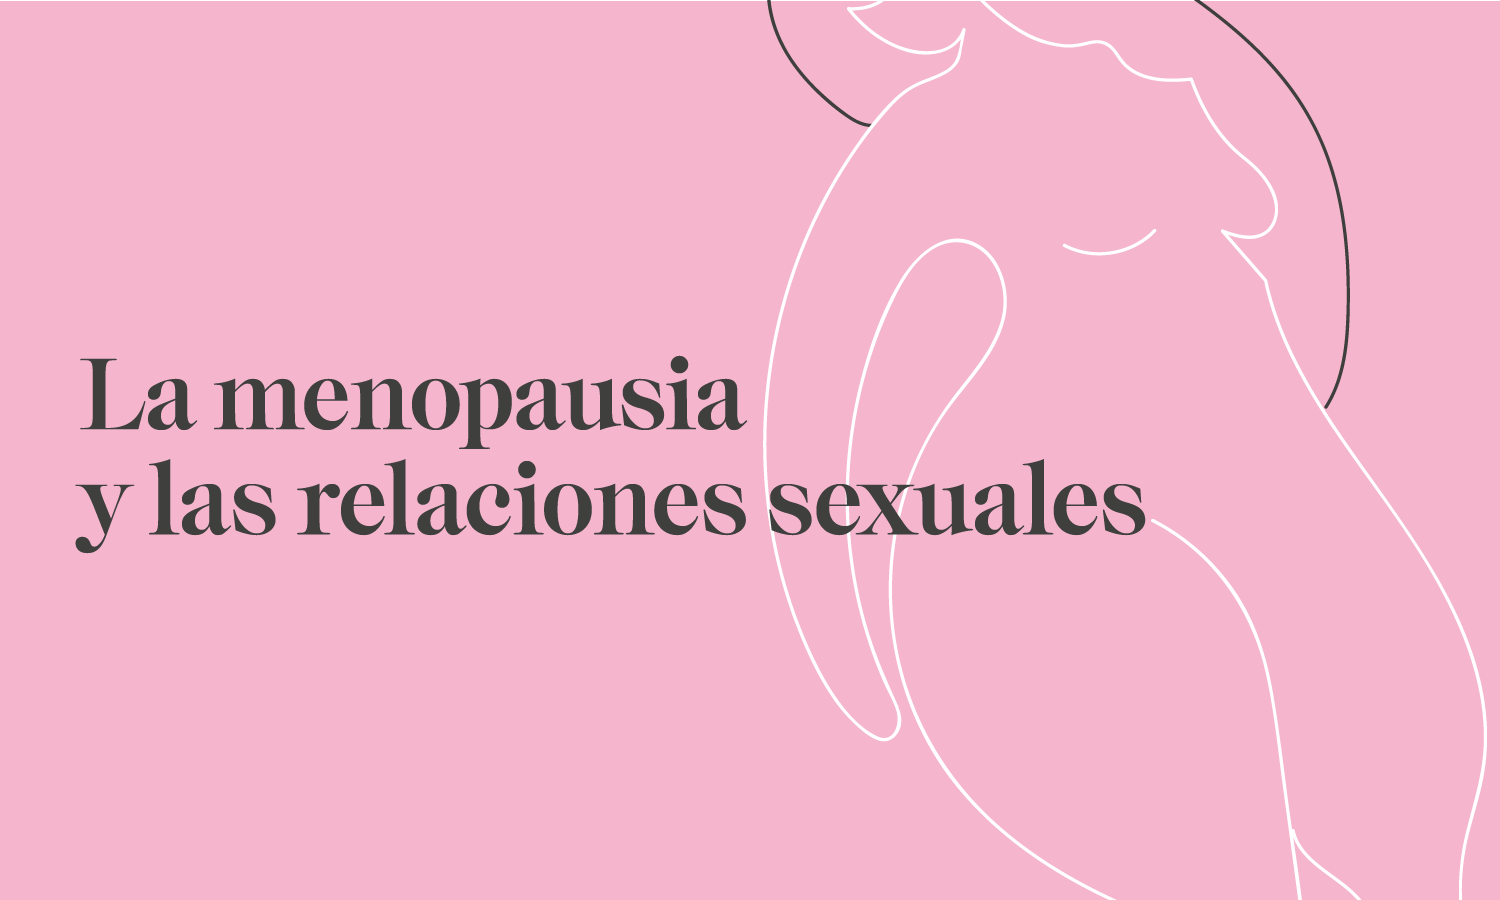 Menopausia y las relaciones sexuales - Clinica Sanabria